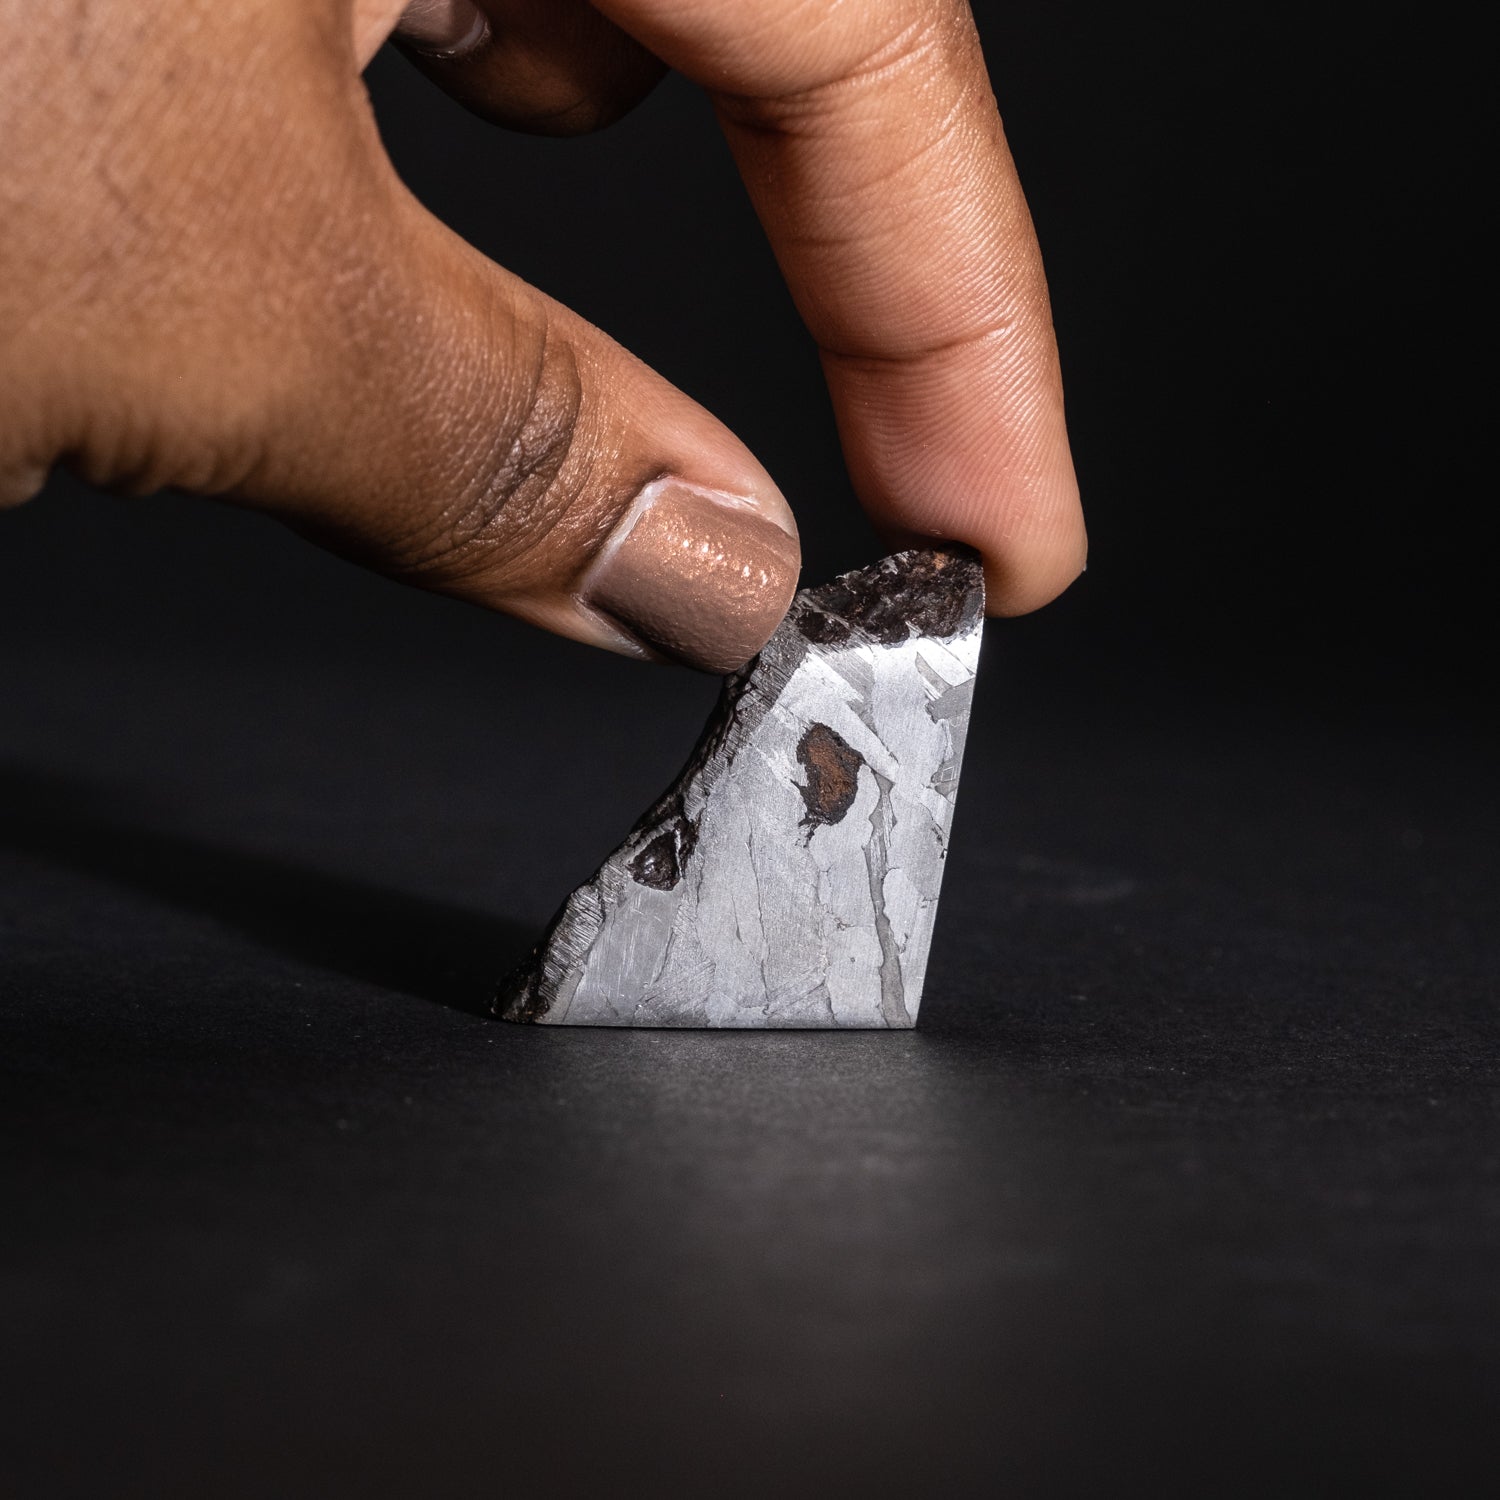 Genuine Muonionalusta Meteorite Slice (31 grams)